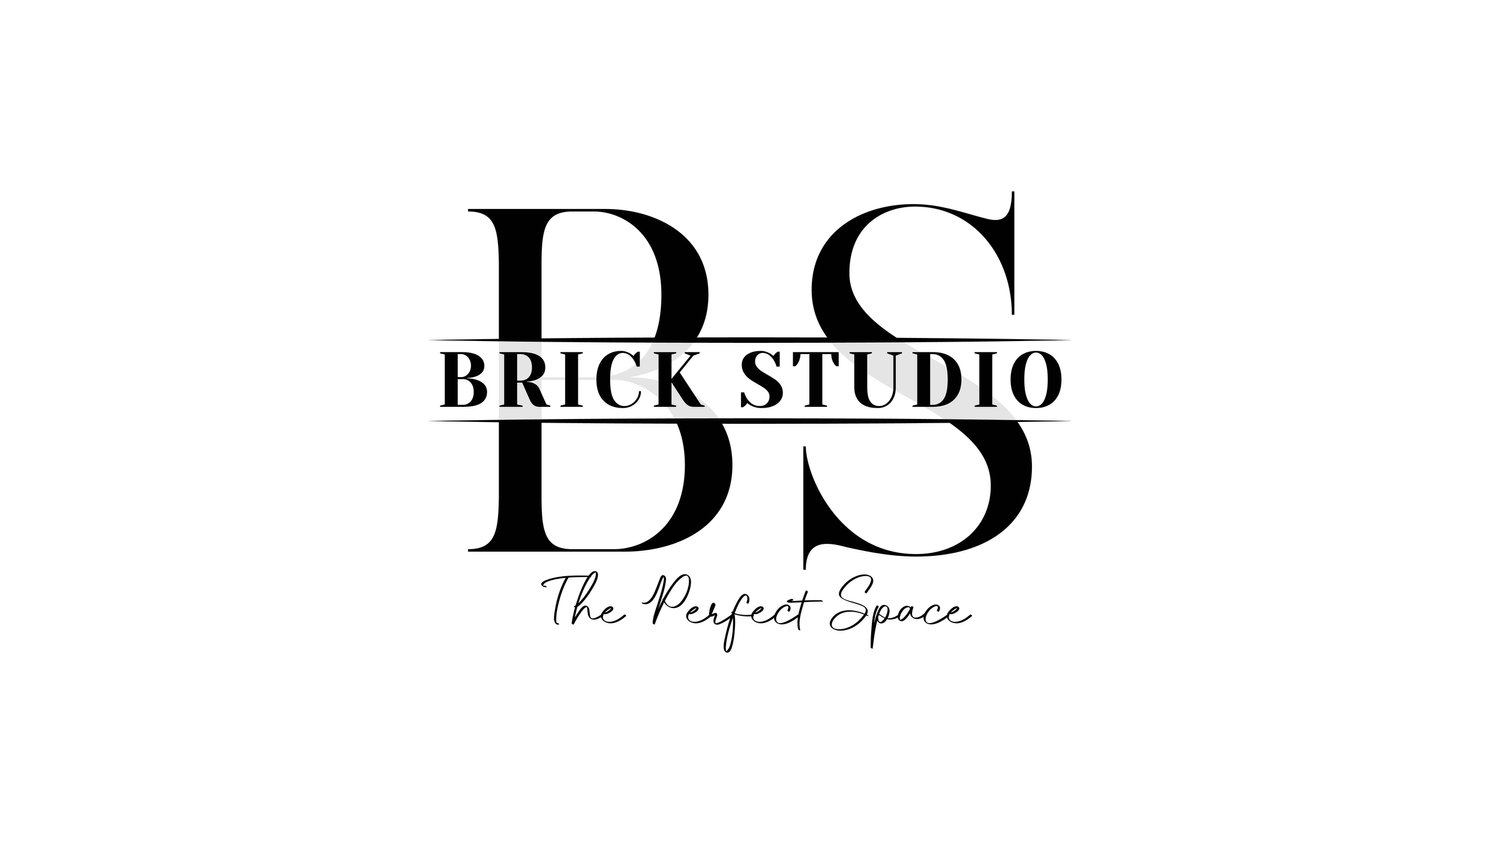 BRICK STUDIO